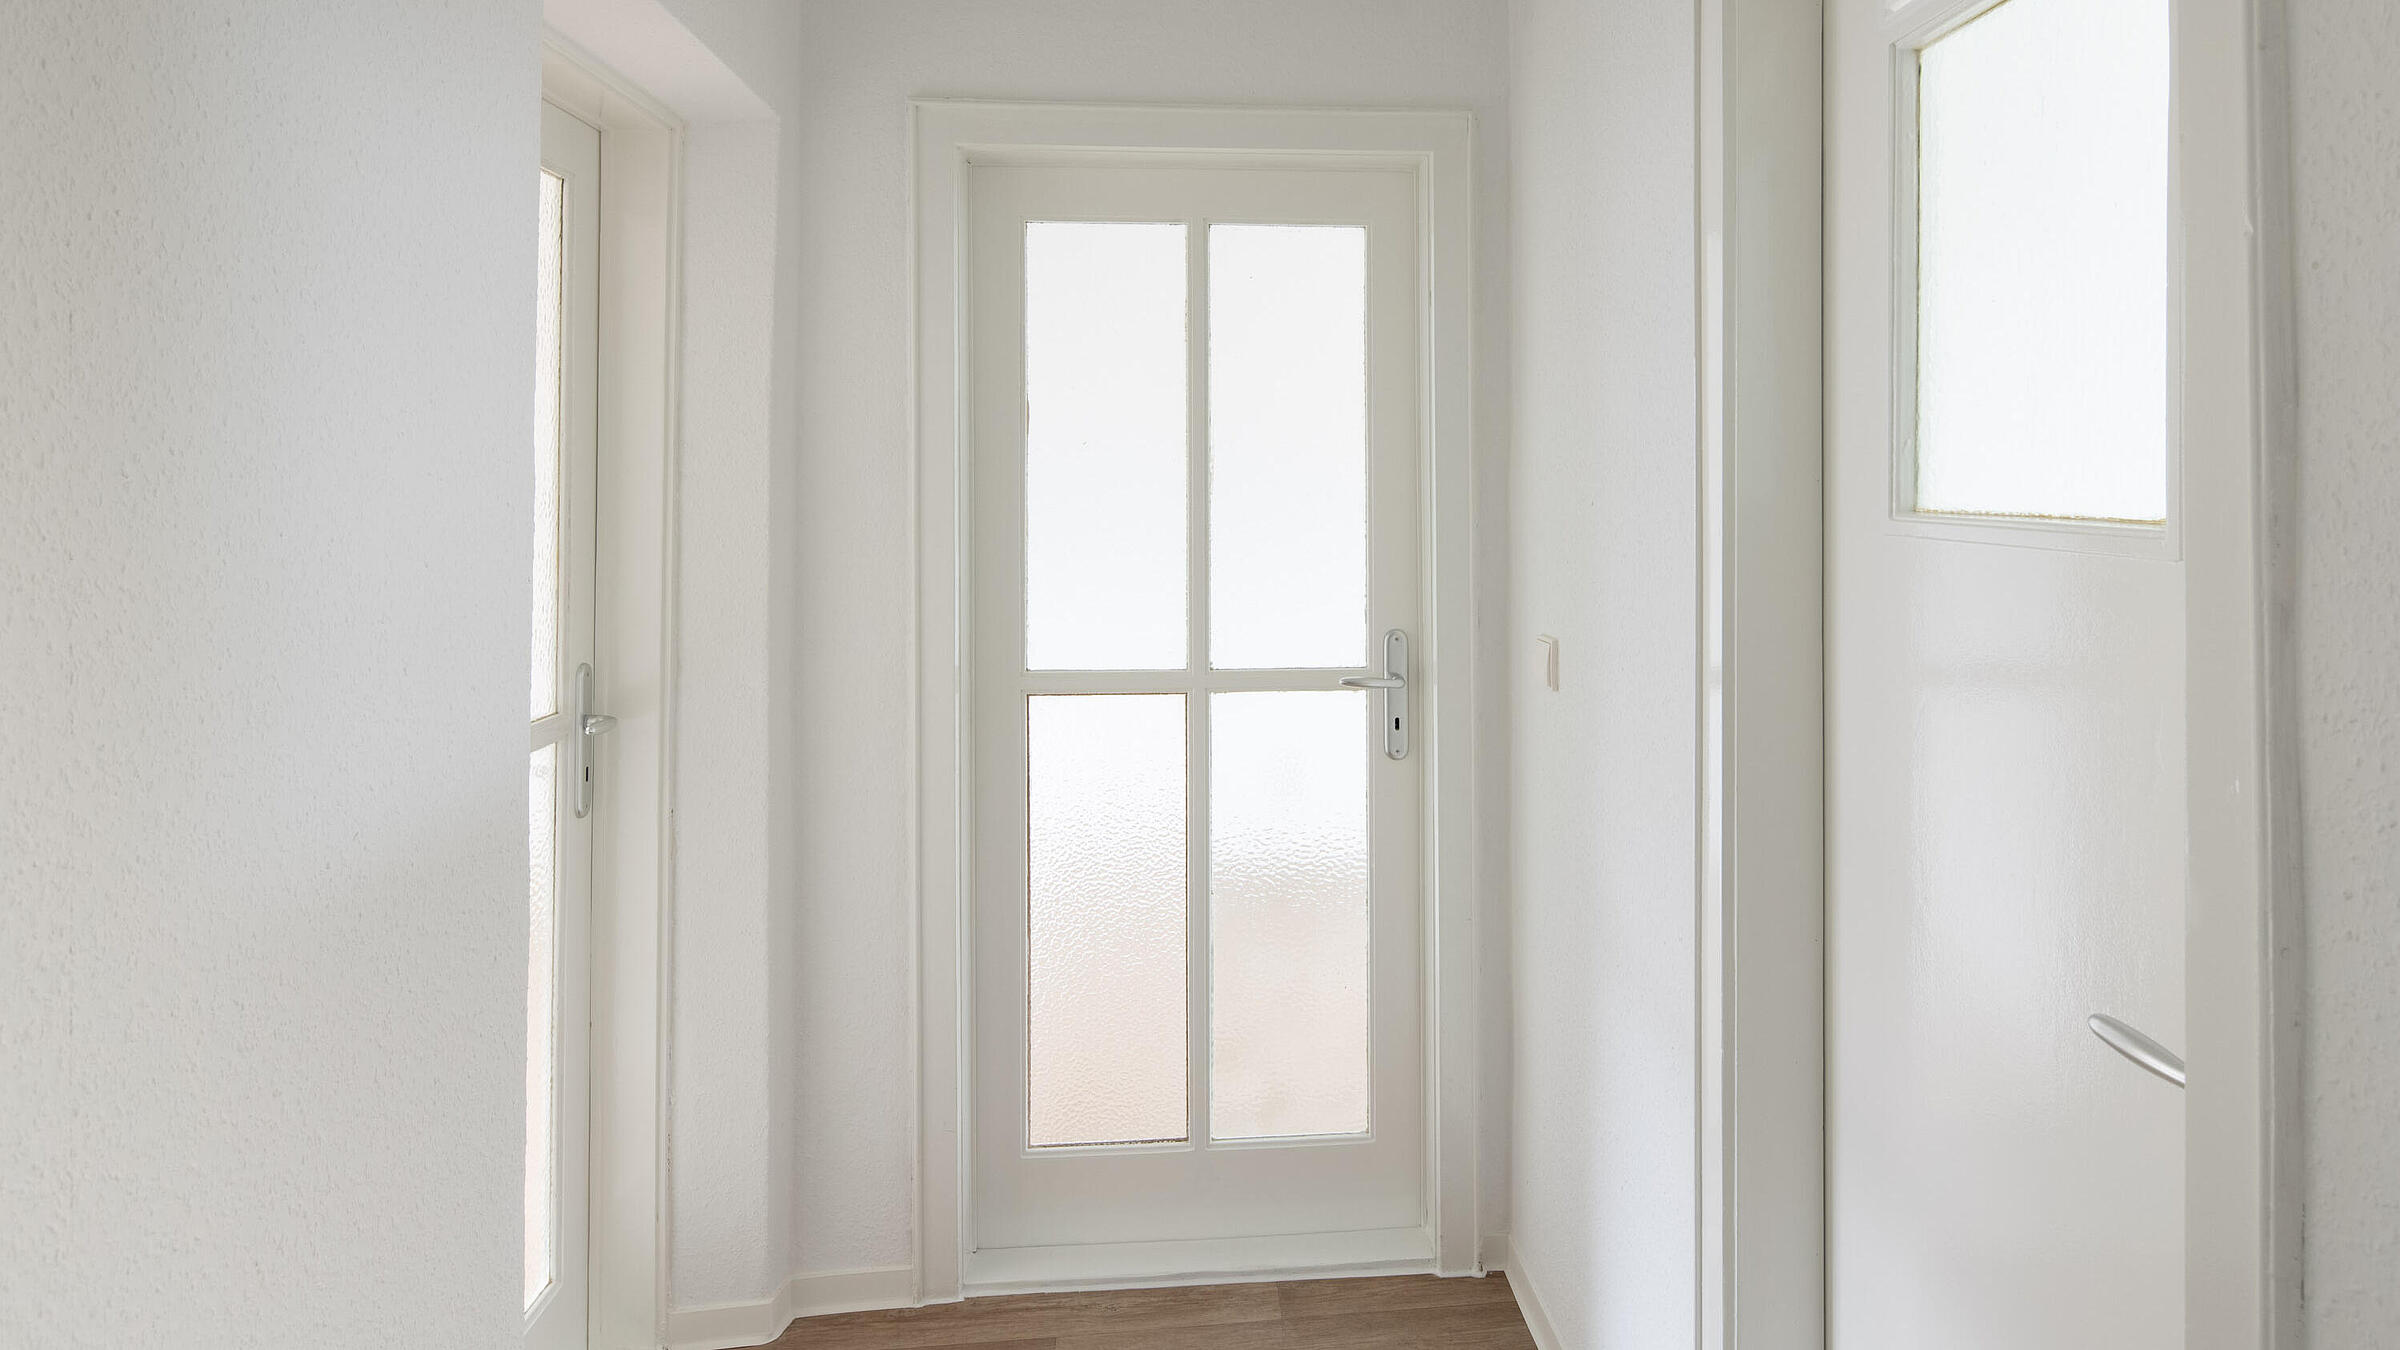 Das Bild zeigt eine modernisierte Wohnung: Ein Flur mit PVC-Belag in Holzoptik, mit einer Tür mit gerostetem Glaseinsatz geradezu, sowie jeweils einer Tür mit Glaseinsatz links abgehend und einer weiteren Tür mit Glasoberlicht rechts abgehend. 